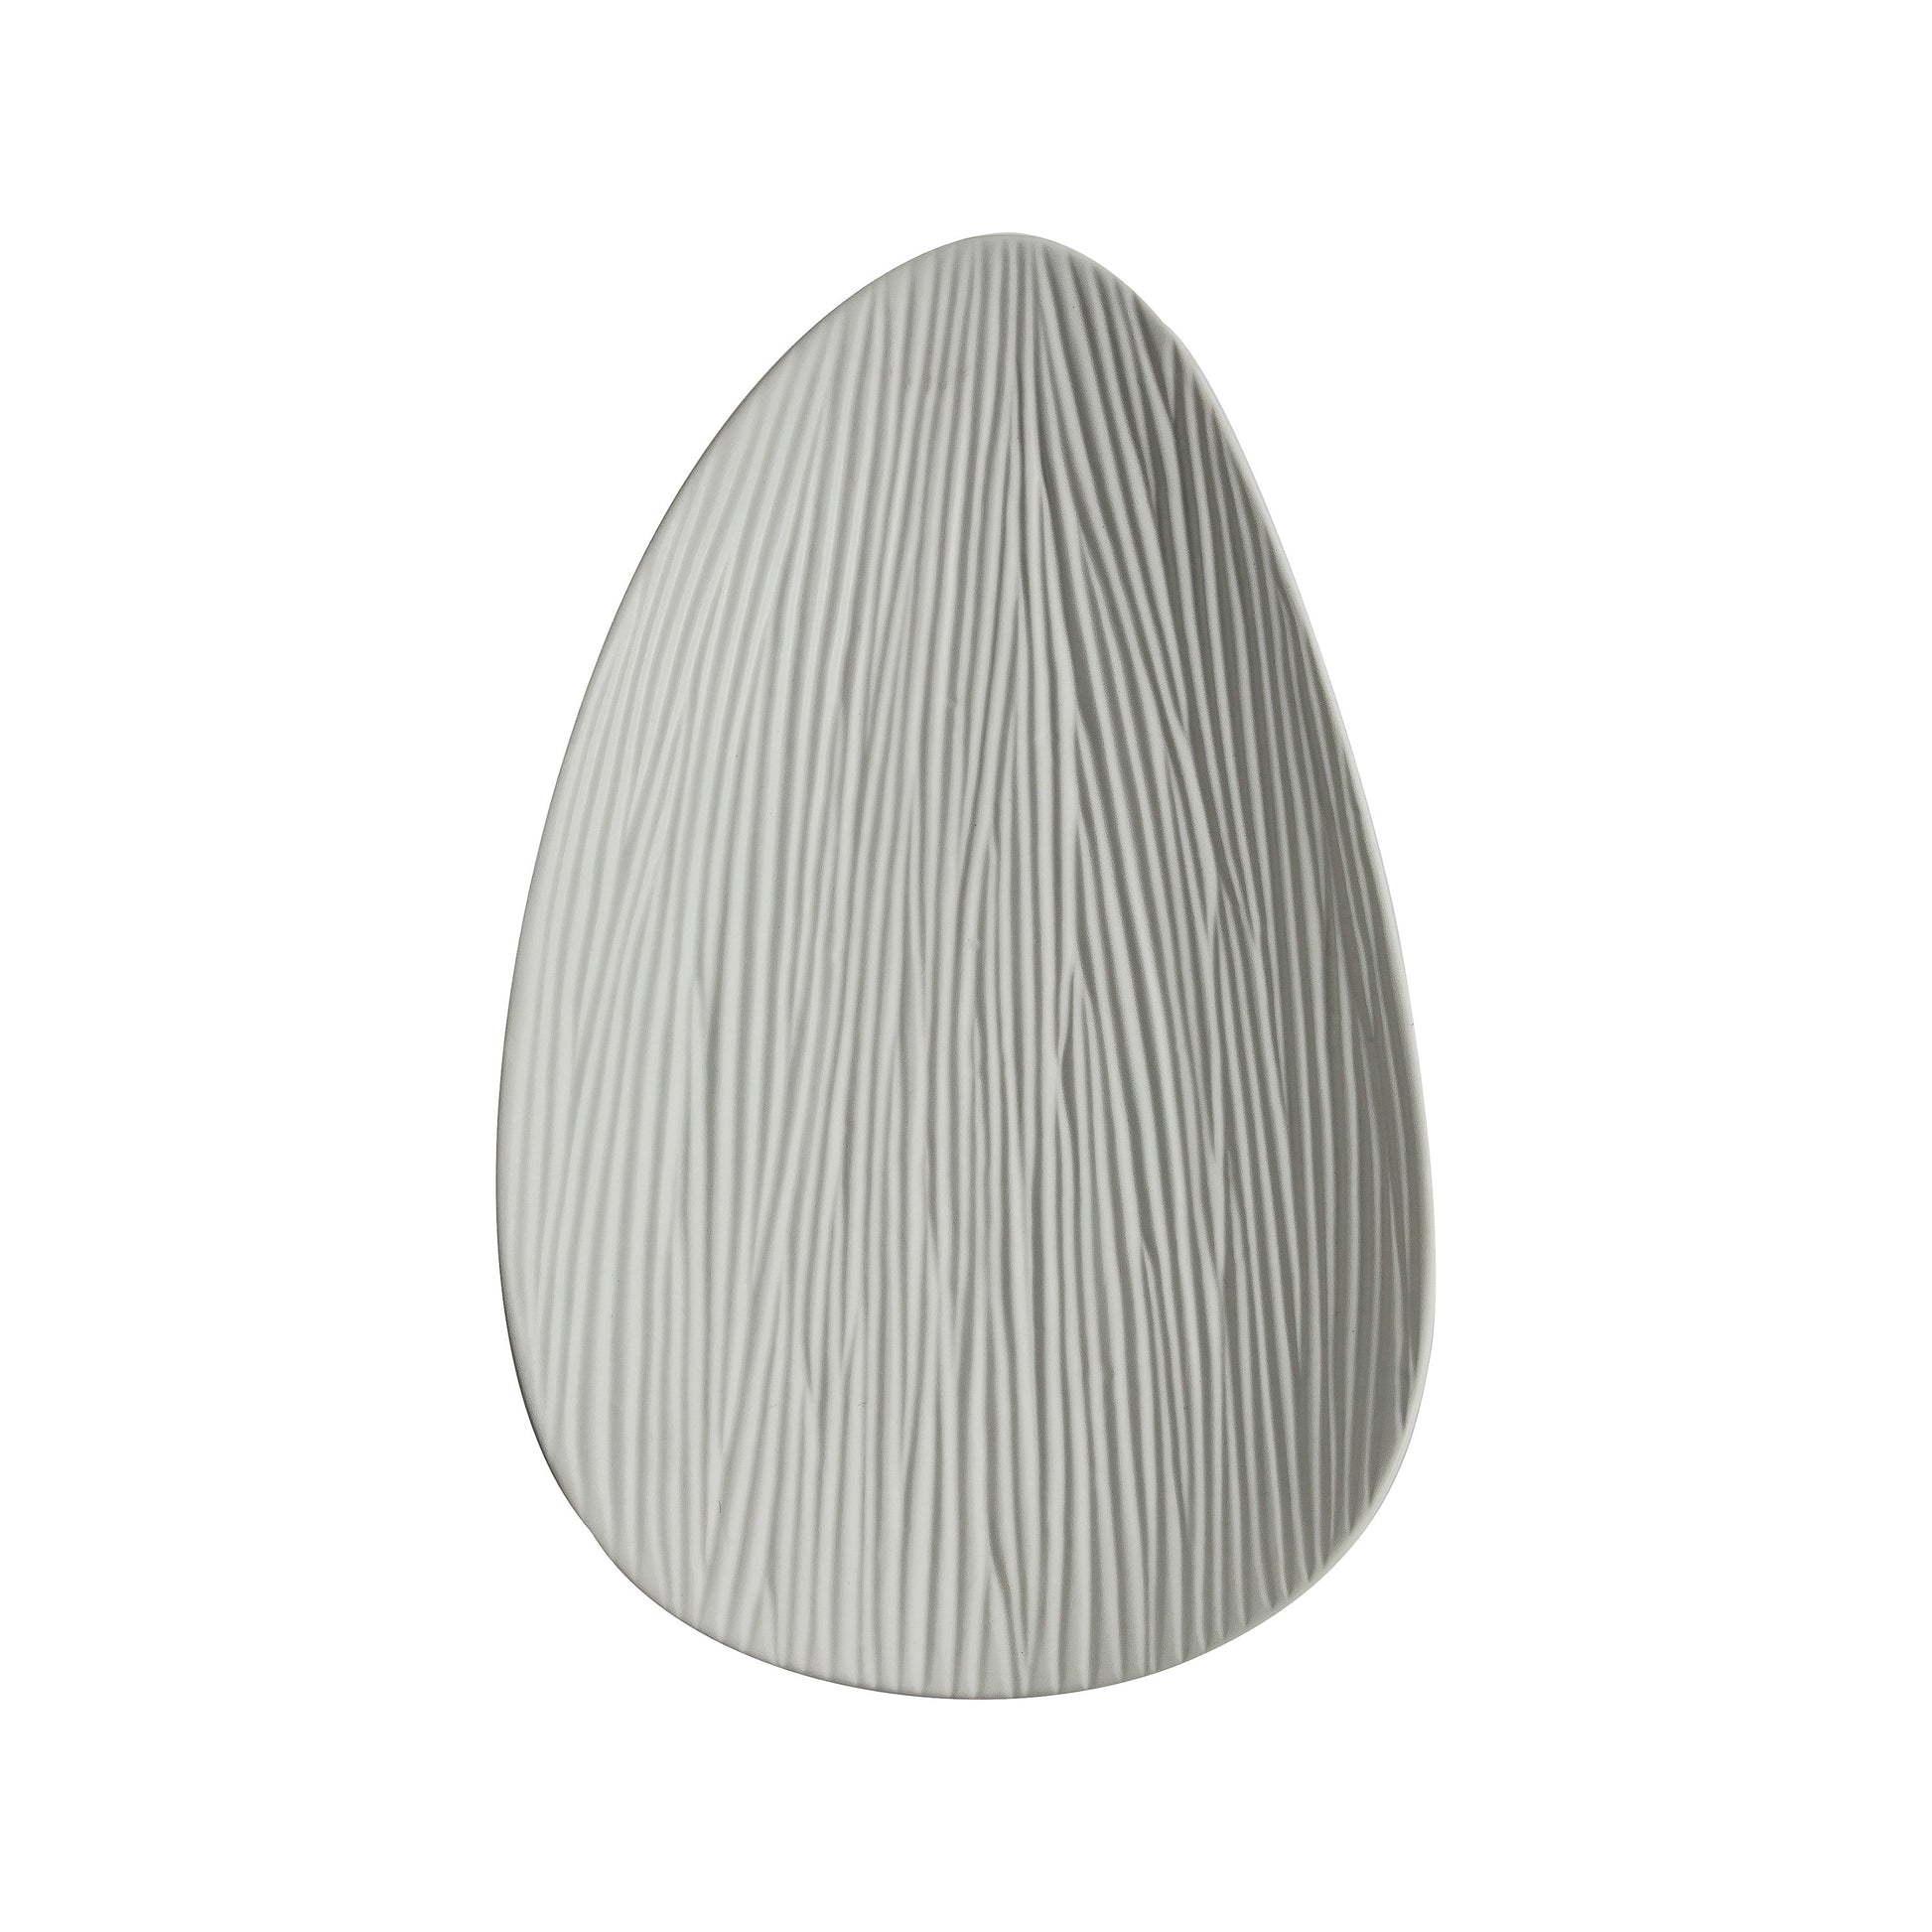 Ushiua Glazed Stoneware Platter - Asymmetric Shape - Textured Surface